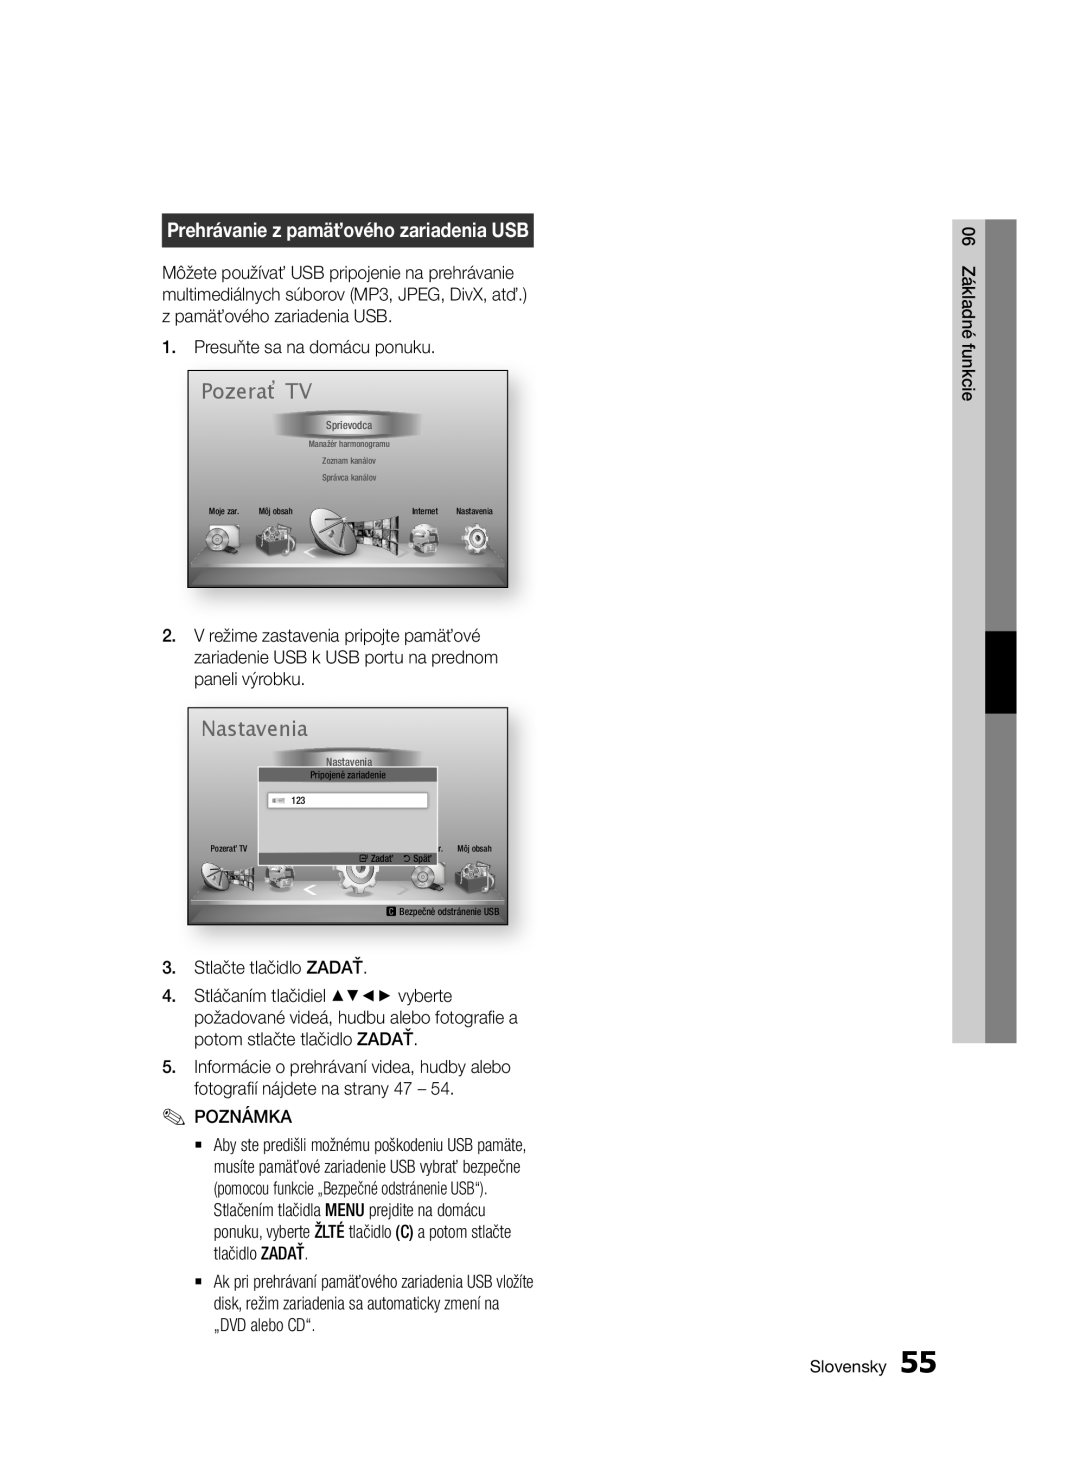 Samsung BD-E6300/EN manual Pozerať TV, Prehrávanie z pamäťového zariadenia USB, Nastavenia, 06 Základné funkcie, Slovensky 